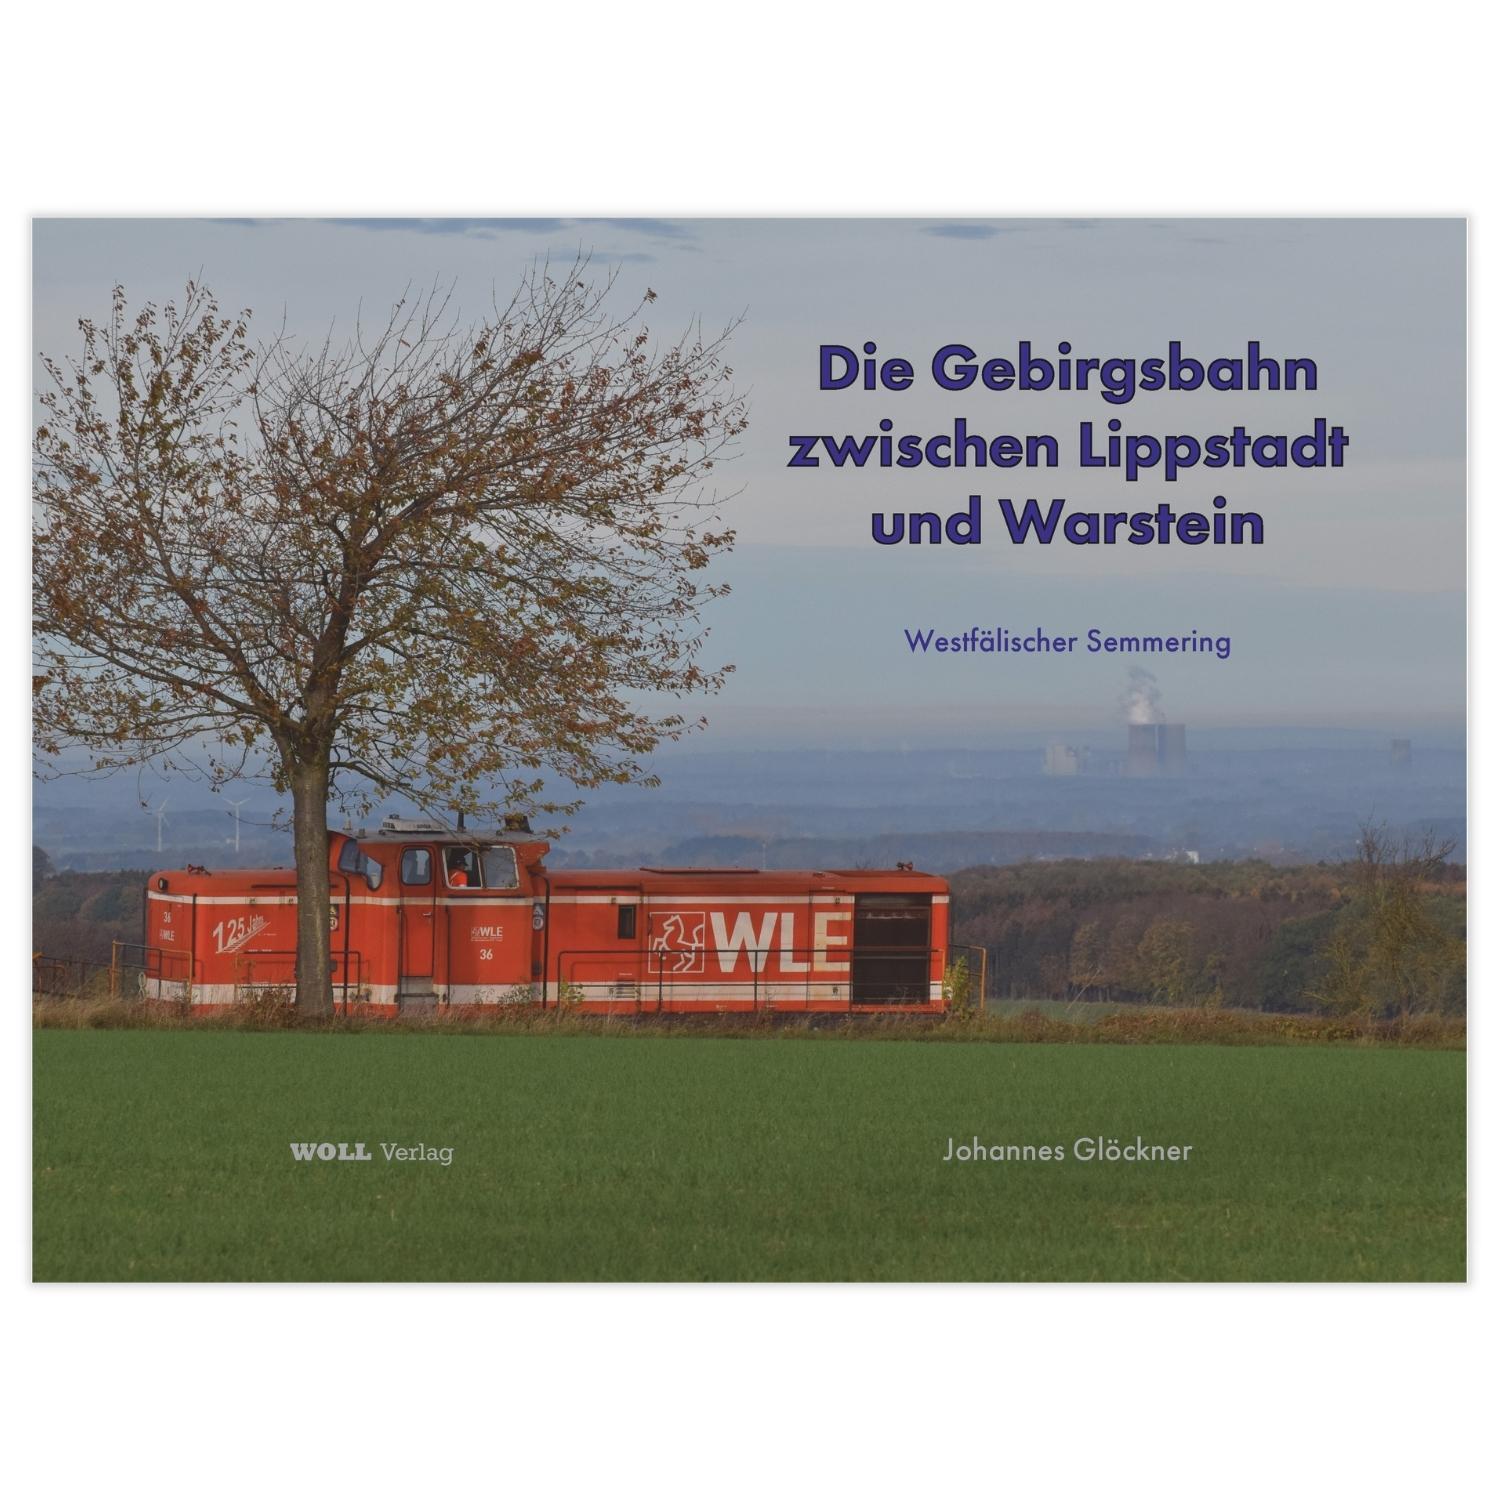 Die Gebirgsbahn zwischen Lippstadt und Warstein – Westfälischer Semmering (Johannes Glöckner)